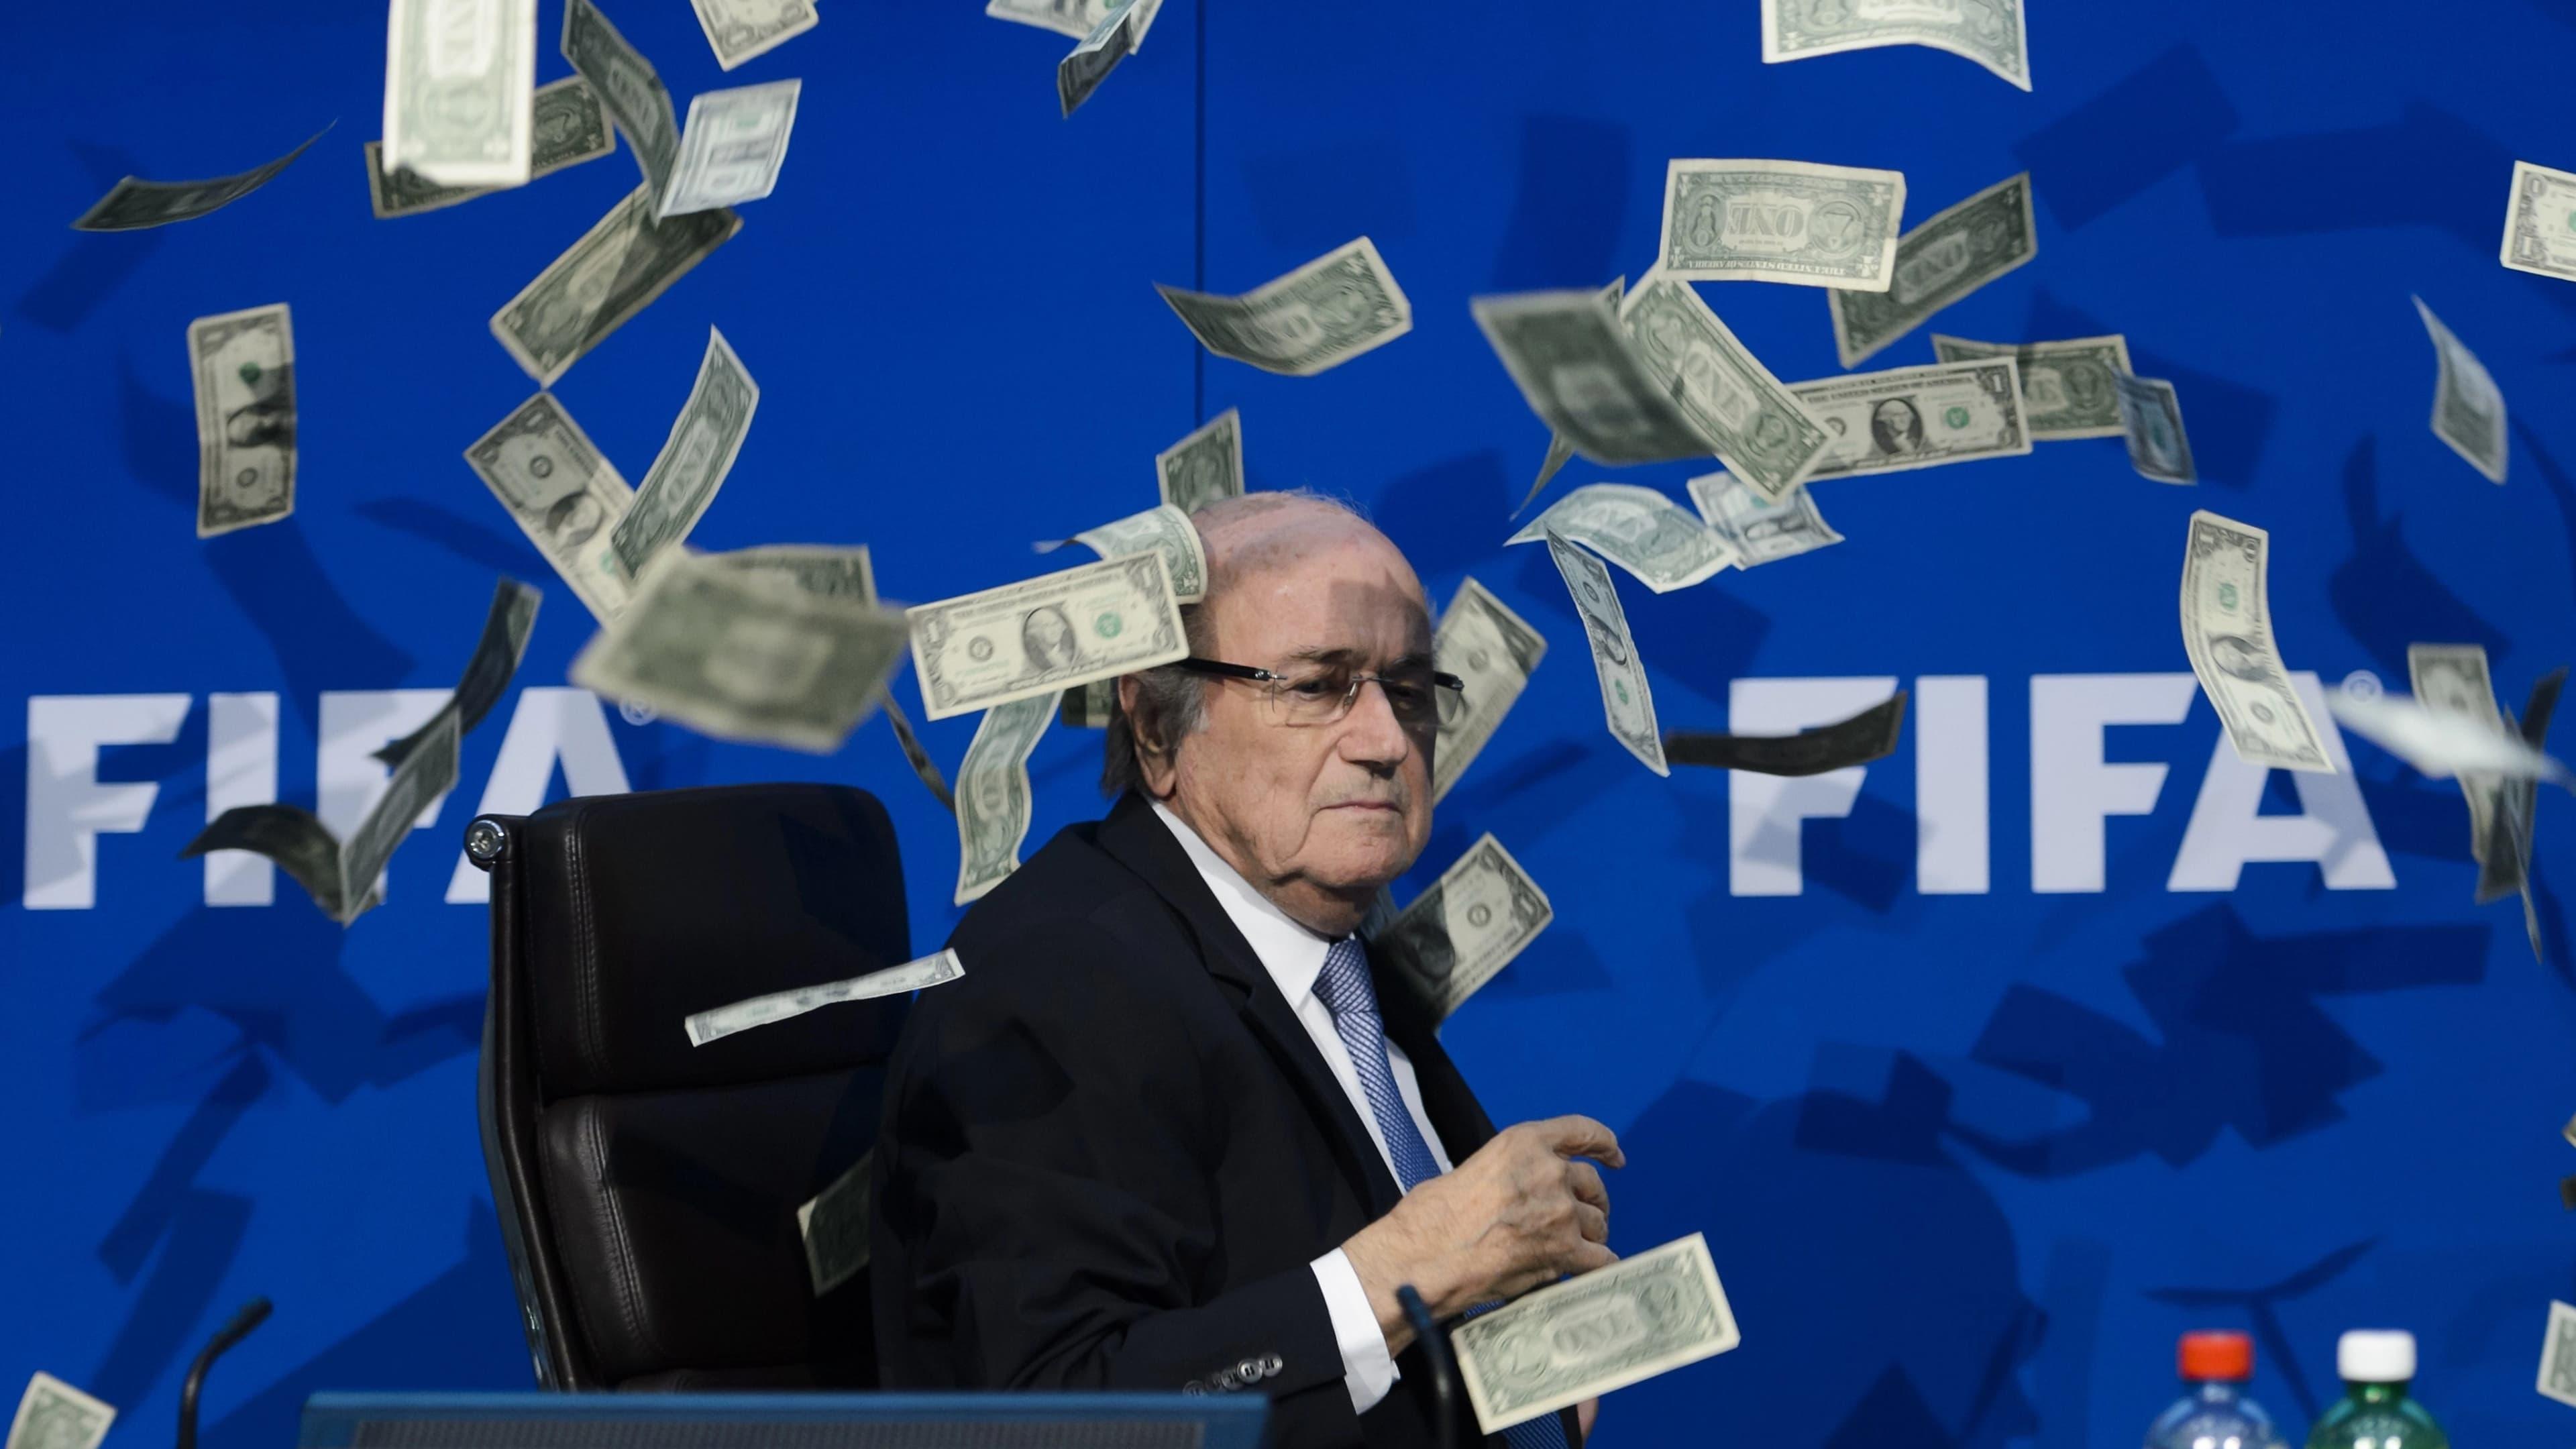 Sepp Blatter backdrop